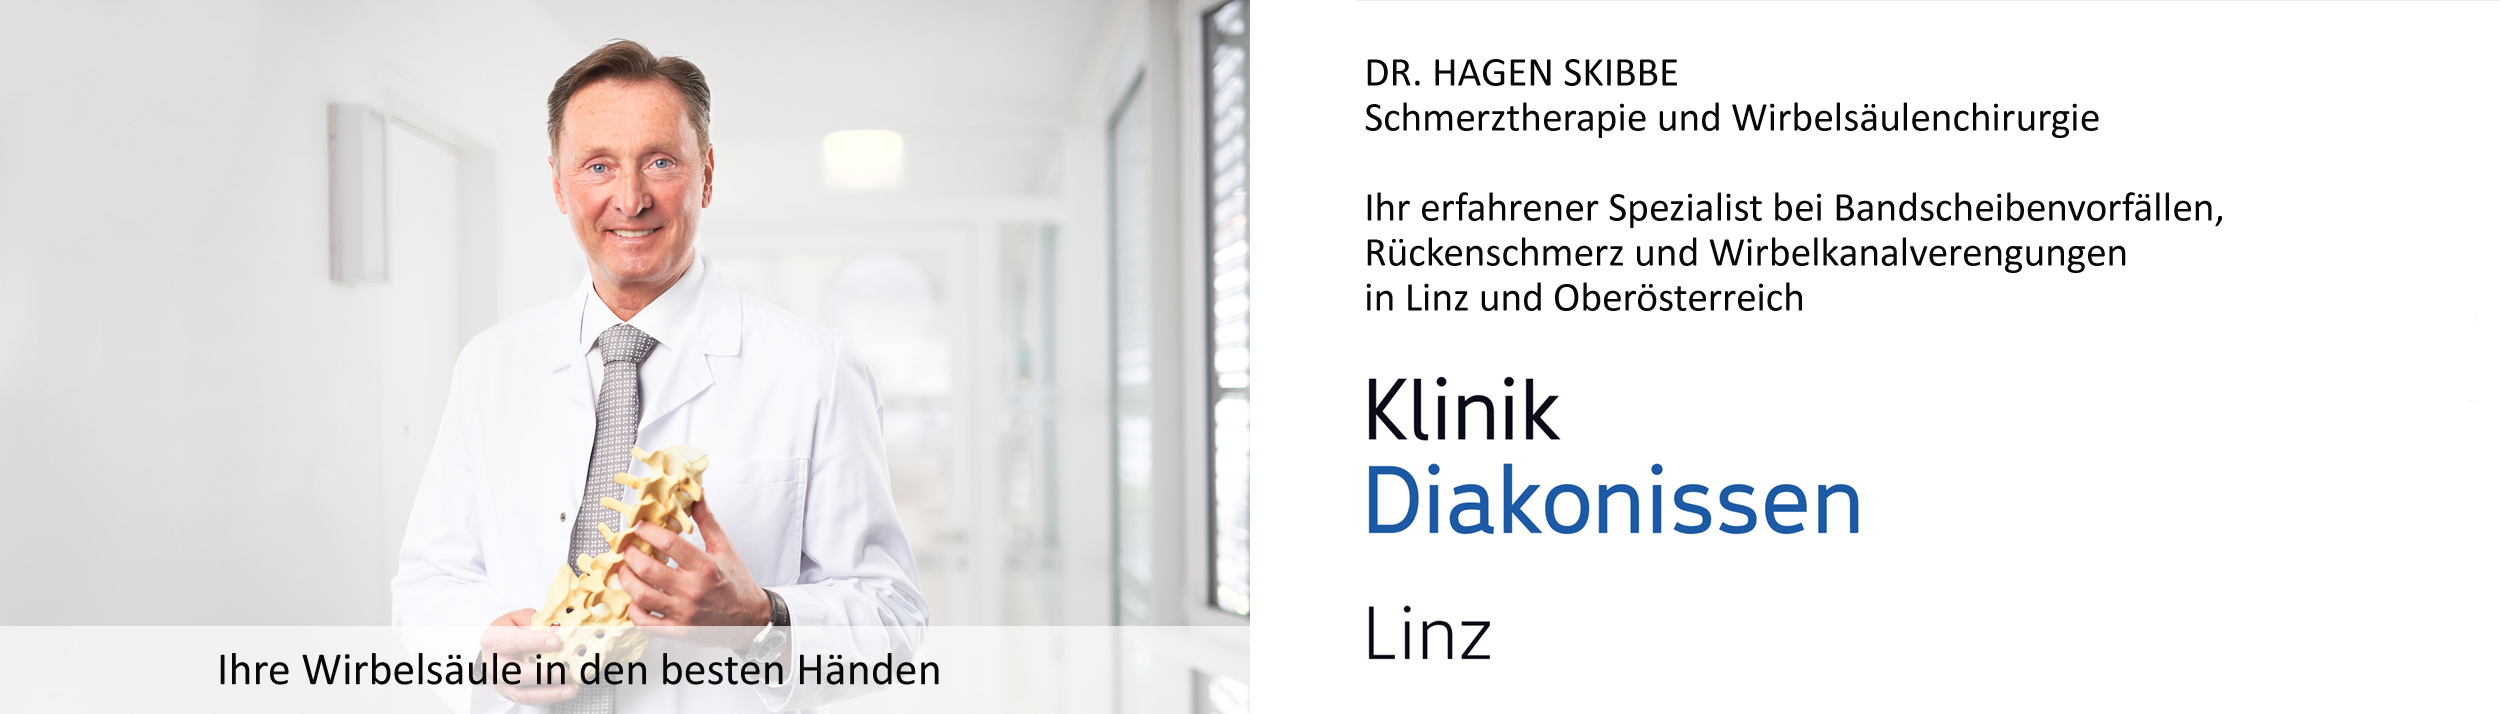 Dr. Skibbe Bandscheibenvorfall in Linz Oberösterreich